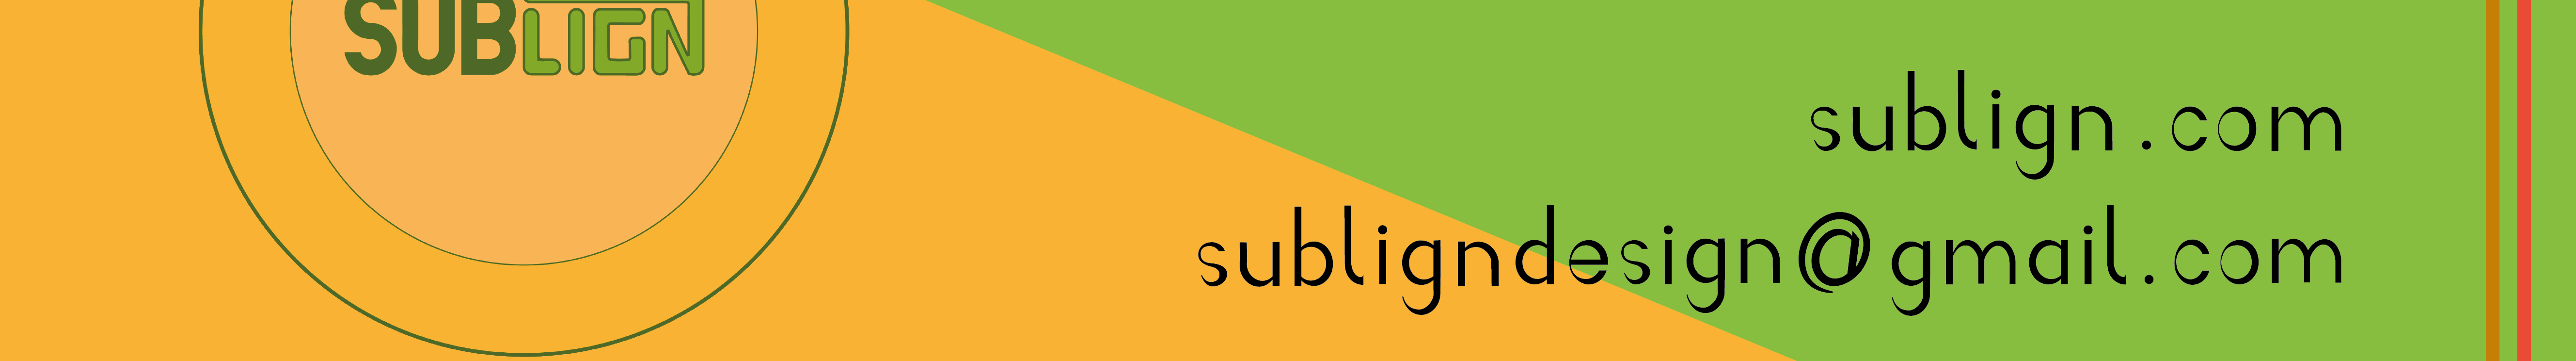 Sublign Design's profile banner